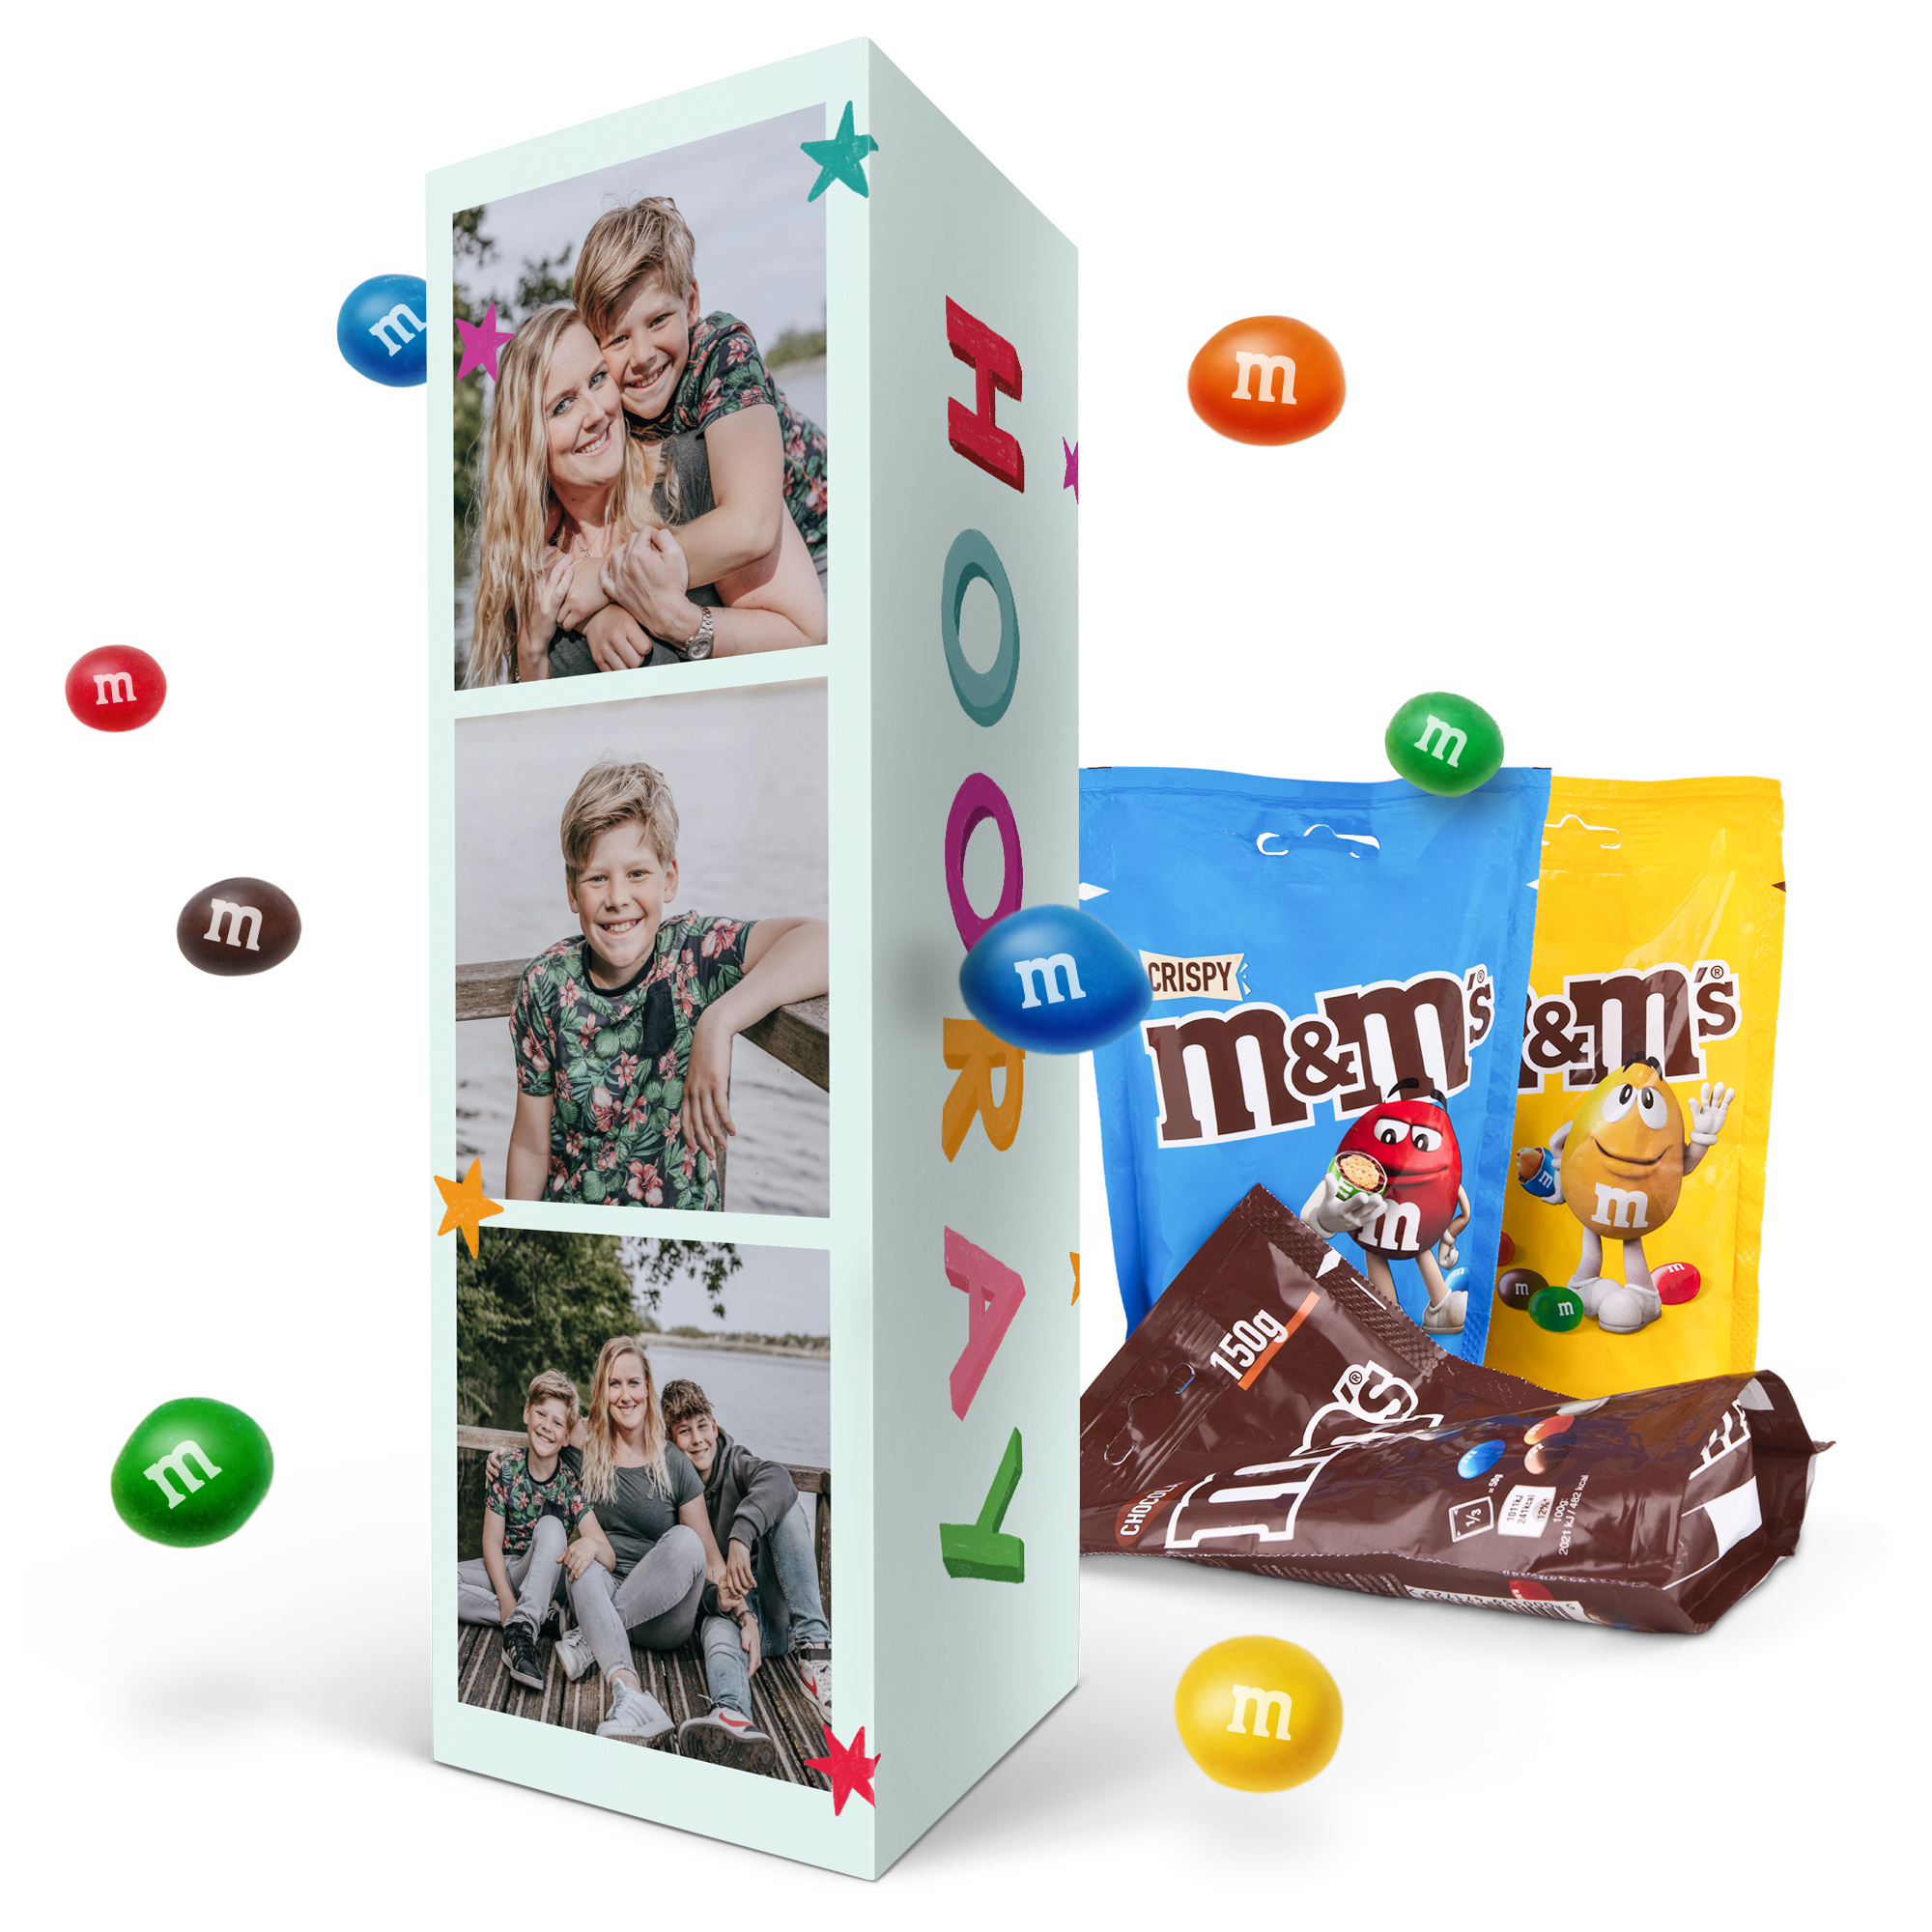 Gepersonaliseerd cadeaupakket met M&M's chocolade